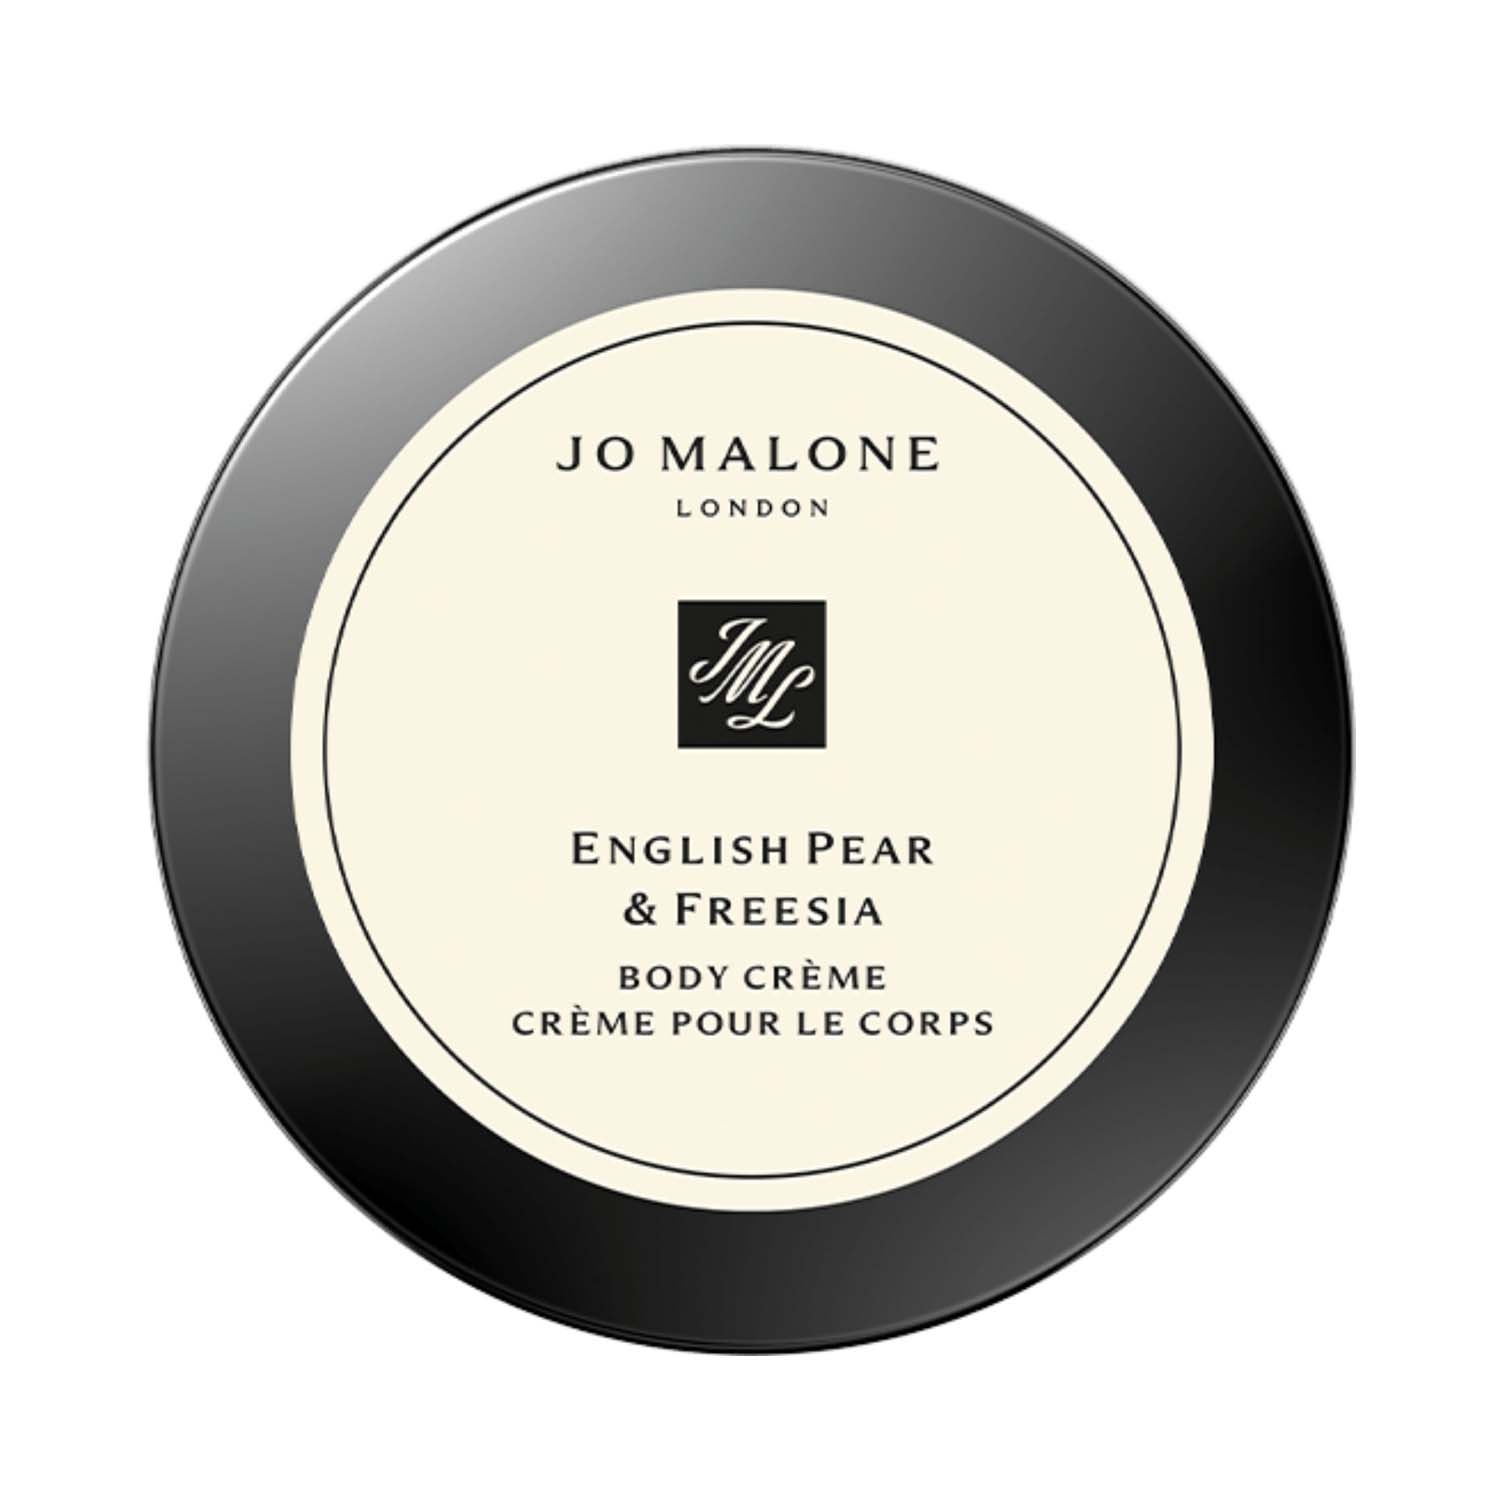 Jo Malone London | Jo Malone London English Pear & Freesia Body Creme (50ml)